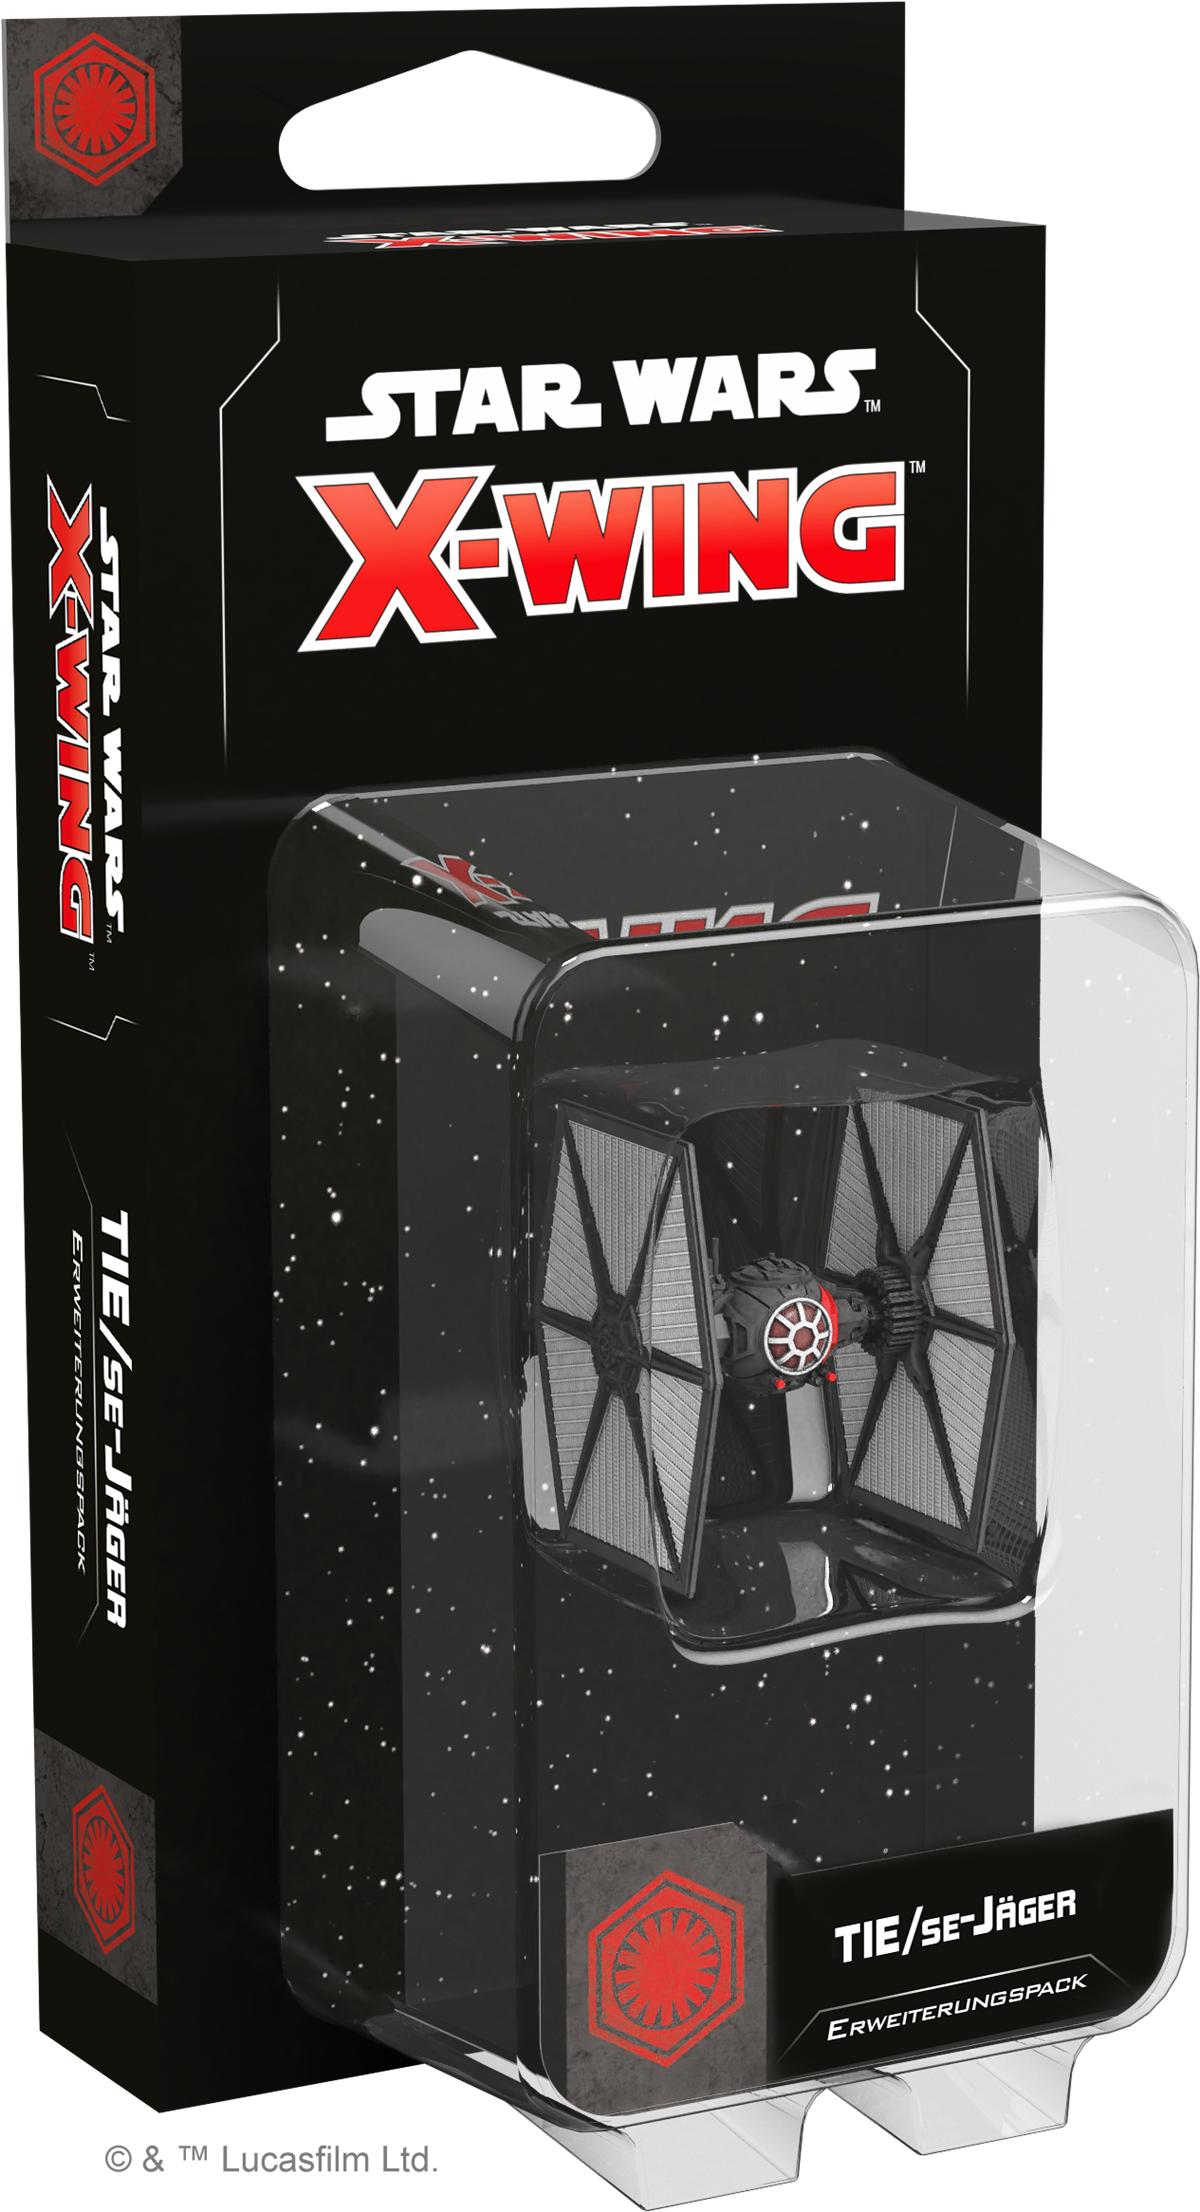 Star Wars: X-Wing 2.Ed. - Erweiterungspack: Tie/SE-Jäger